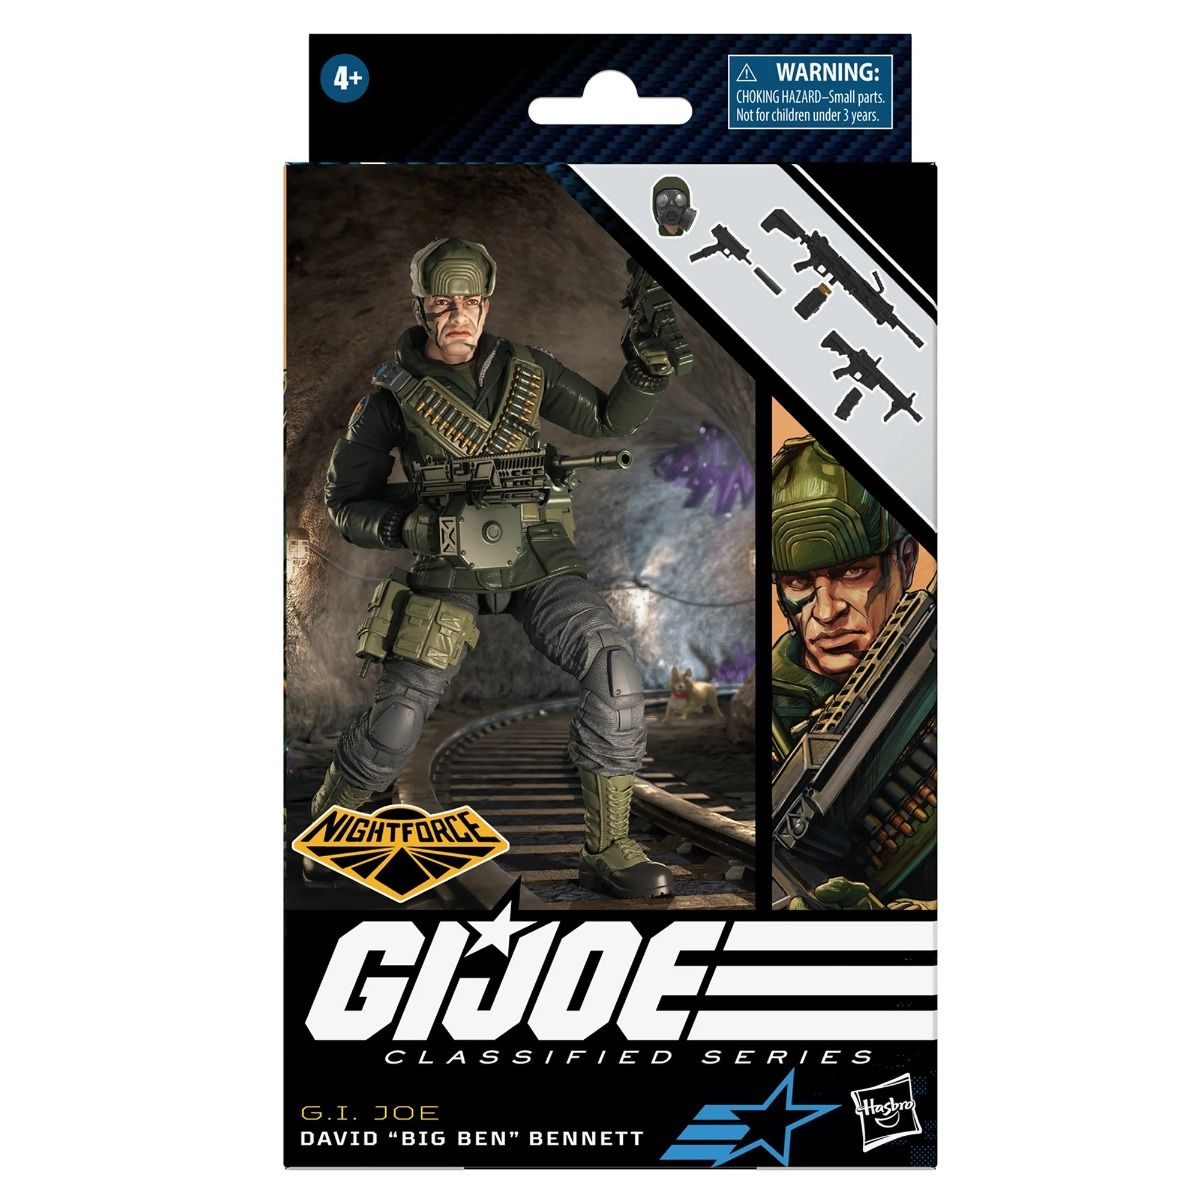 G.I. Joe Classified Series Nightforce David "Big Ben" Bennett (77) 6-Inch Action Figure画像